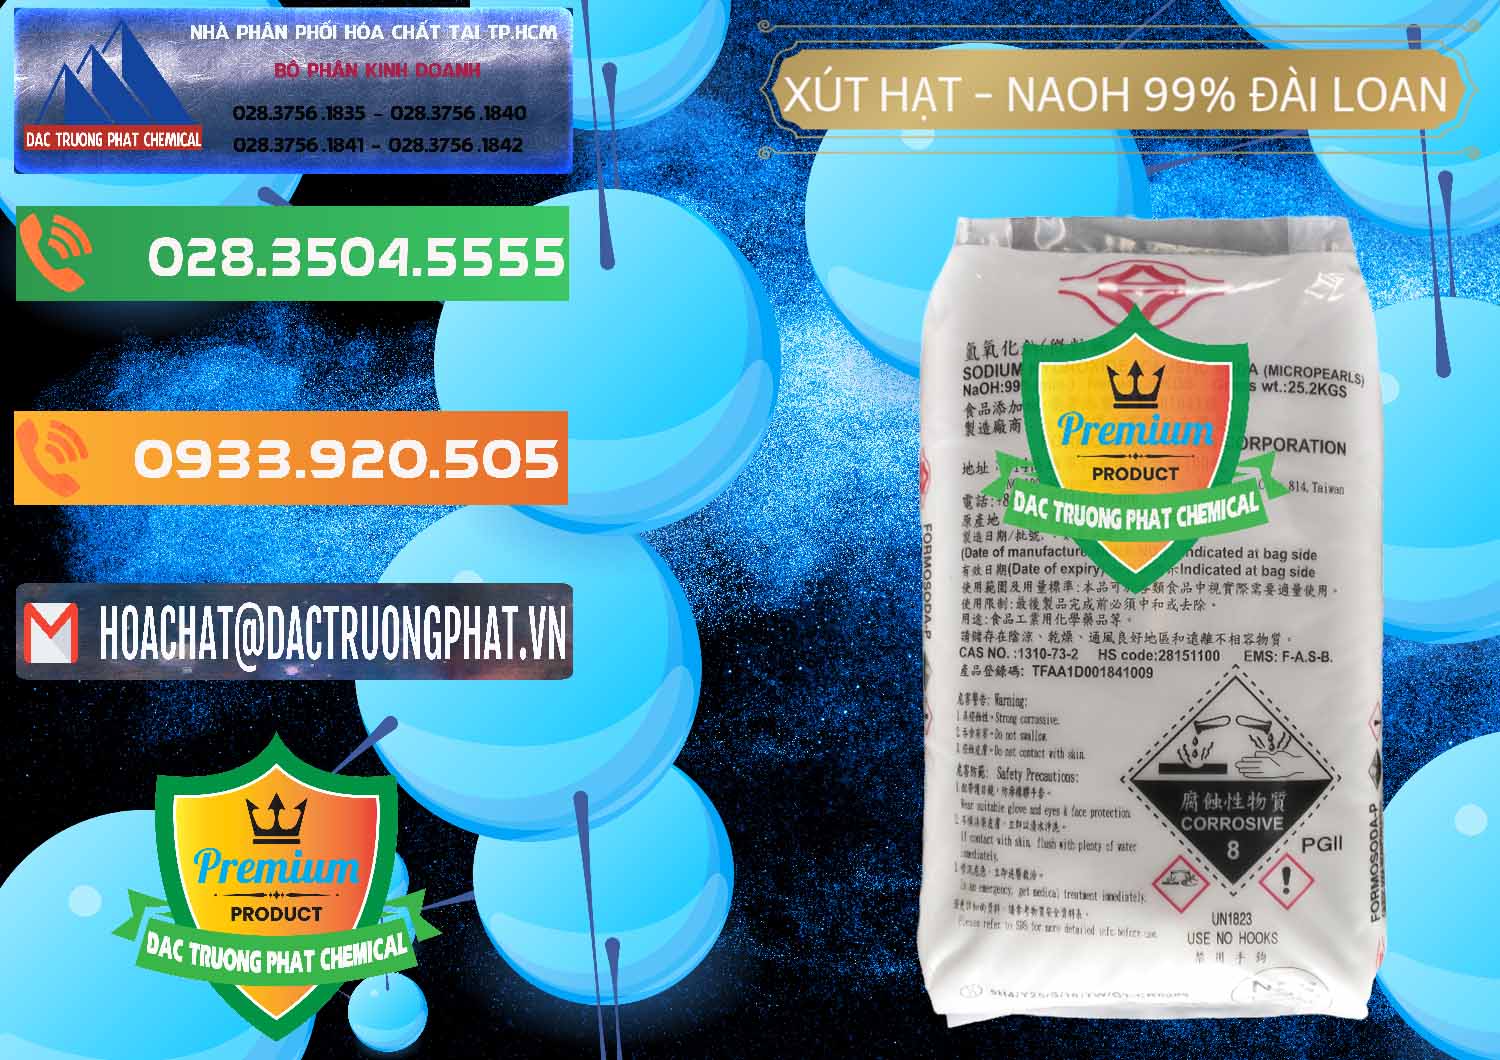 Đơn vị chuyên cung cấp ( bán ) Xút Hạt - NaOH Bột 99% Đài Loan Taiwan Formosa - 0167 - Đơn vị chuyên kinh doanh ( phân phối ) hóa chất tại TP.HCM - hoachatxulynuoc.com.vn